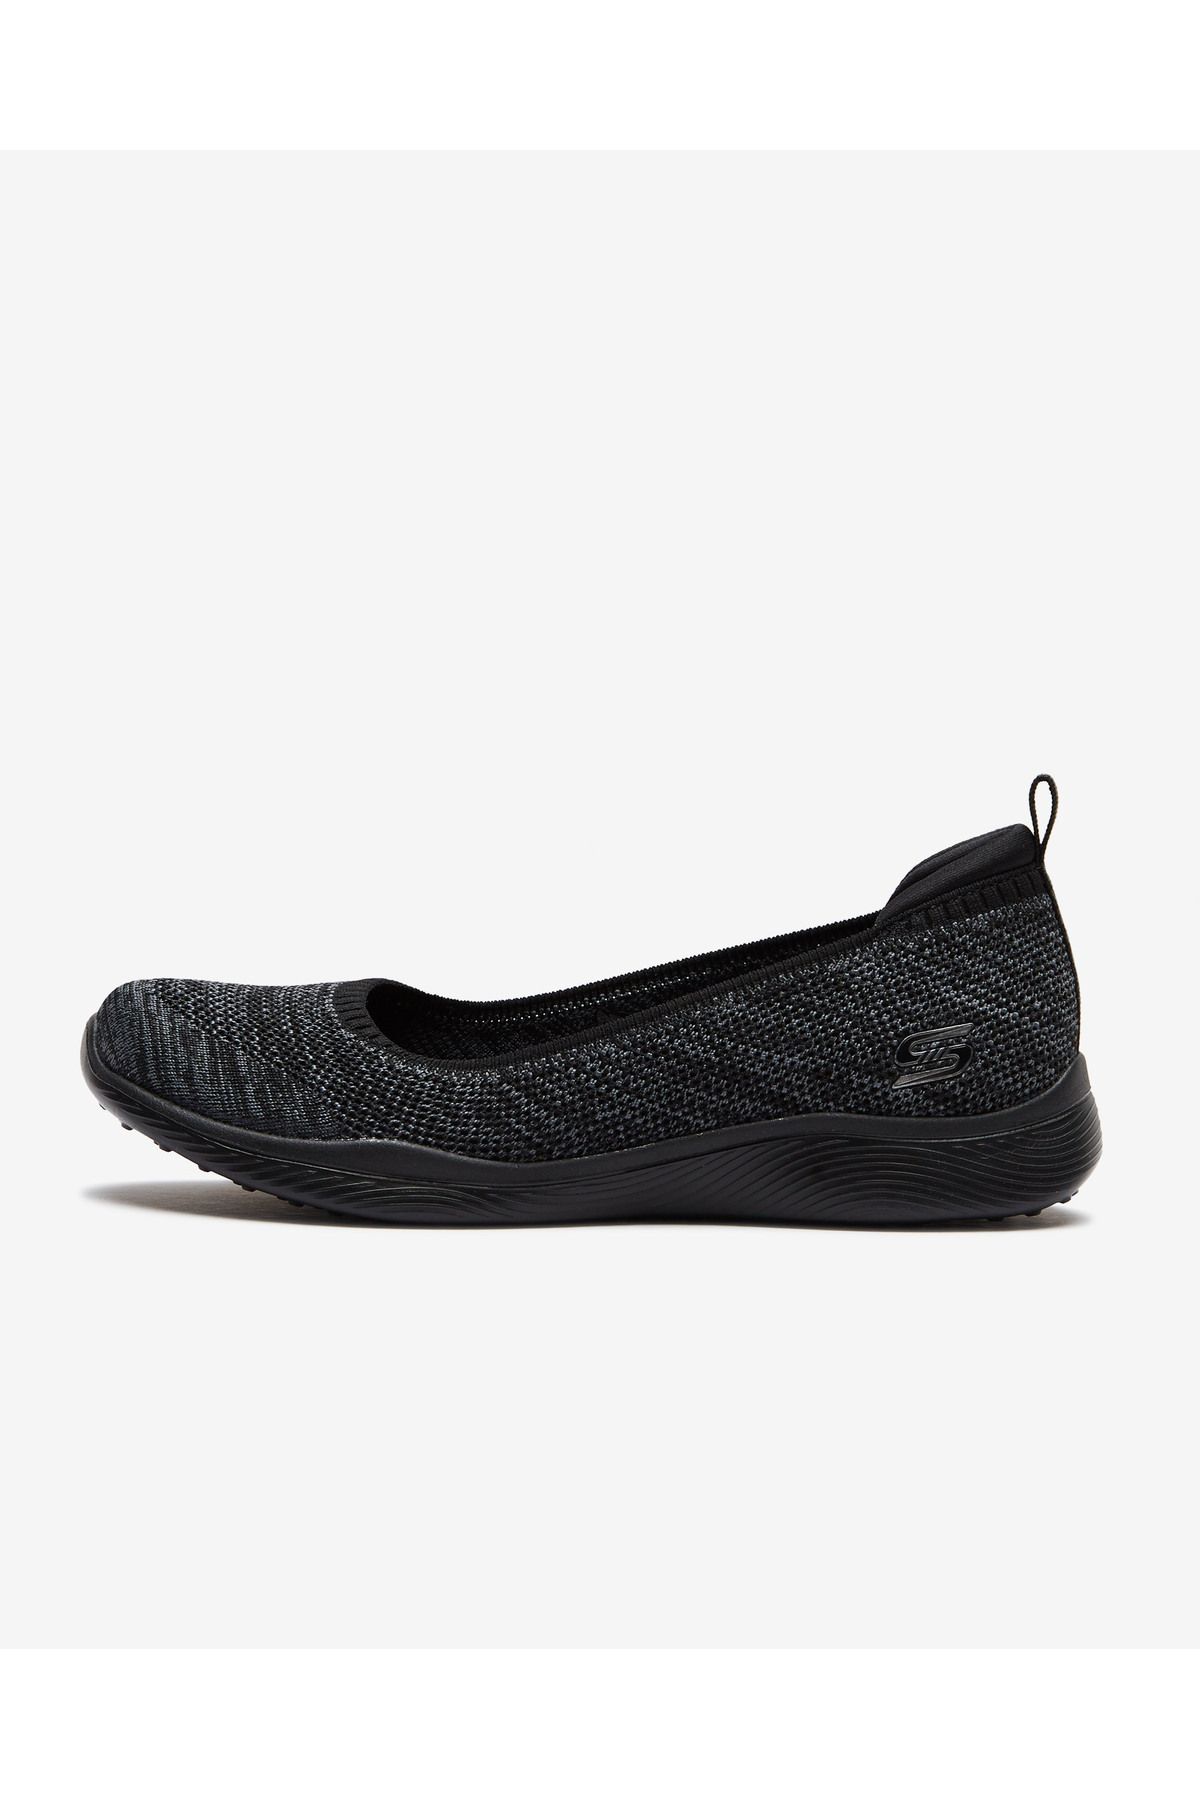 Skechers Microburst 2.0 - Be Iconic Kadın Siyah Günlük Ayakkabı 104134 Bkcc